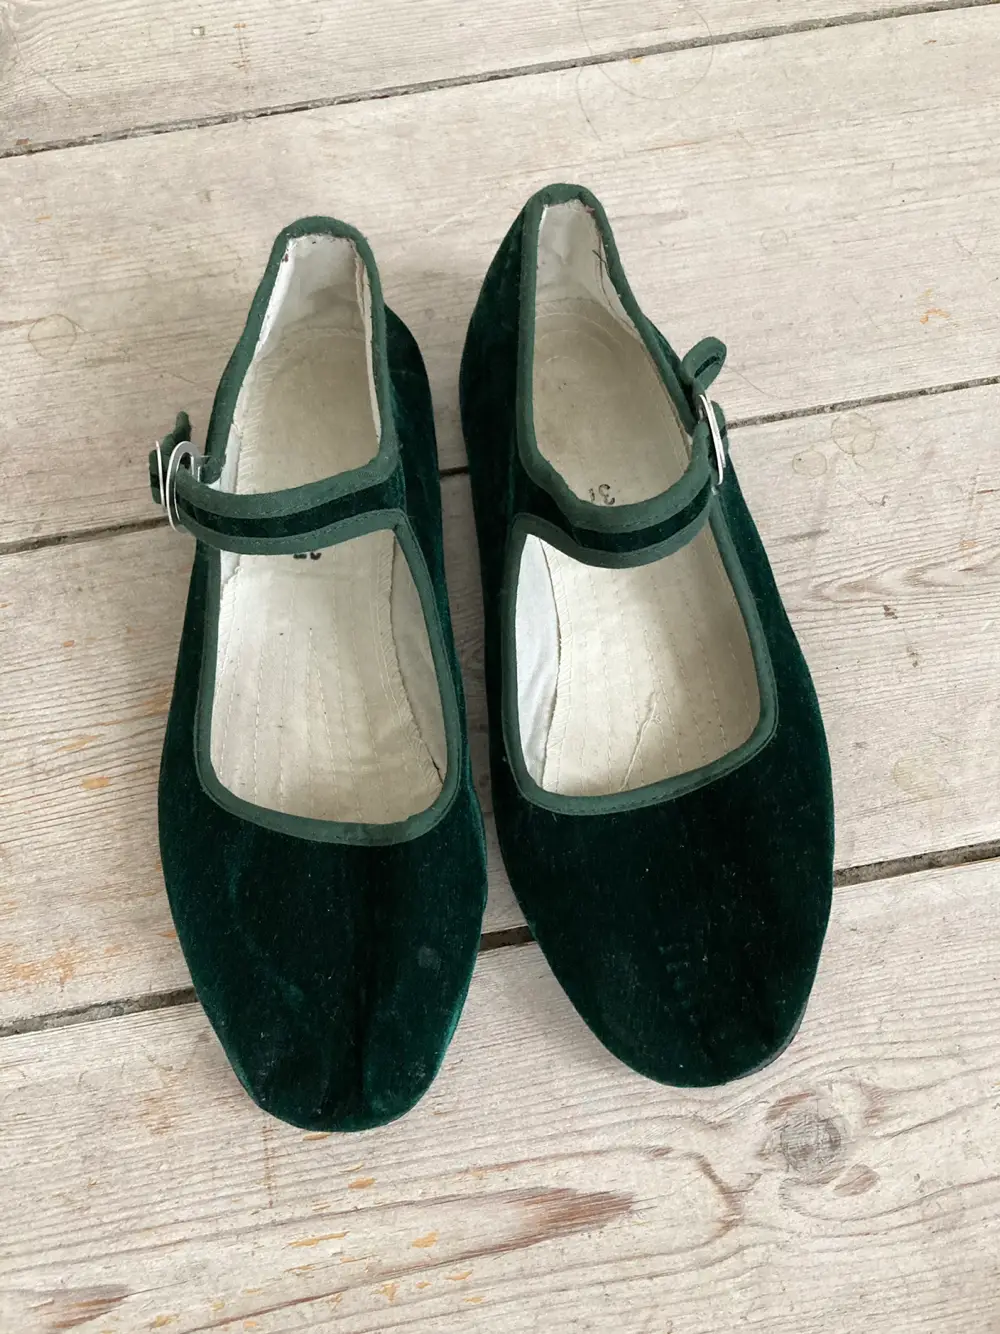 Køb Kina sko Kinasko i størrelse 37 af Anne-Louise på Reshopper · Shop secondhand børn, mor og bolig